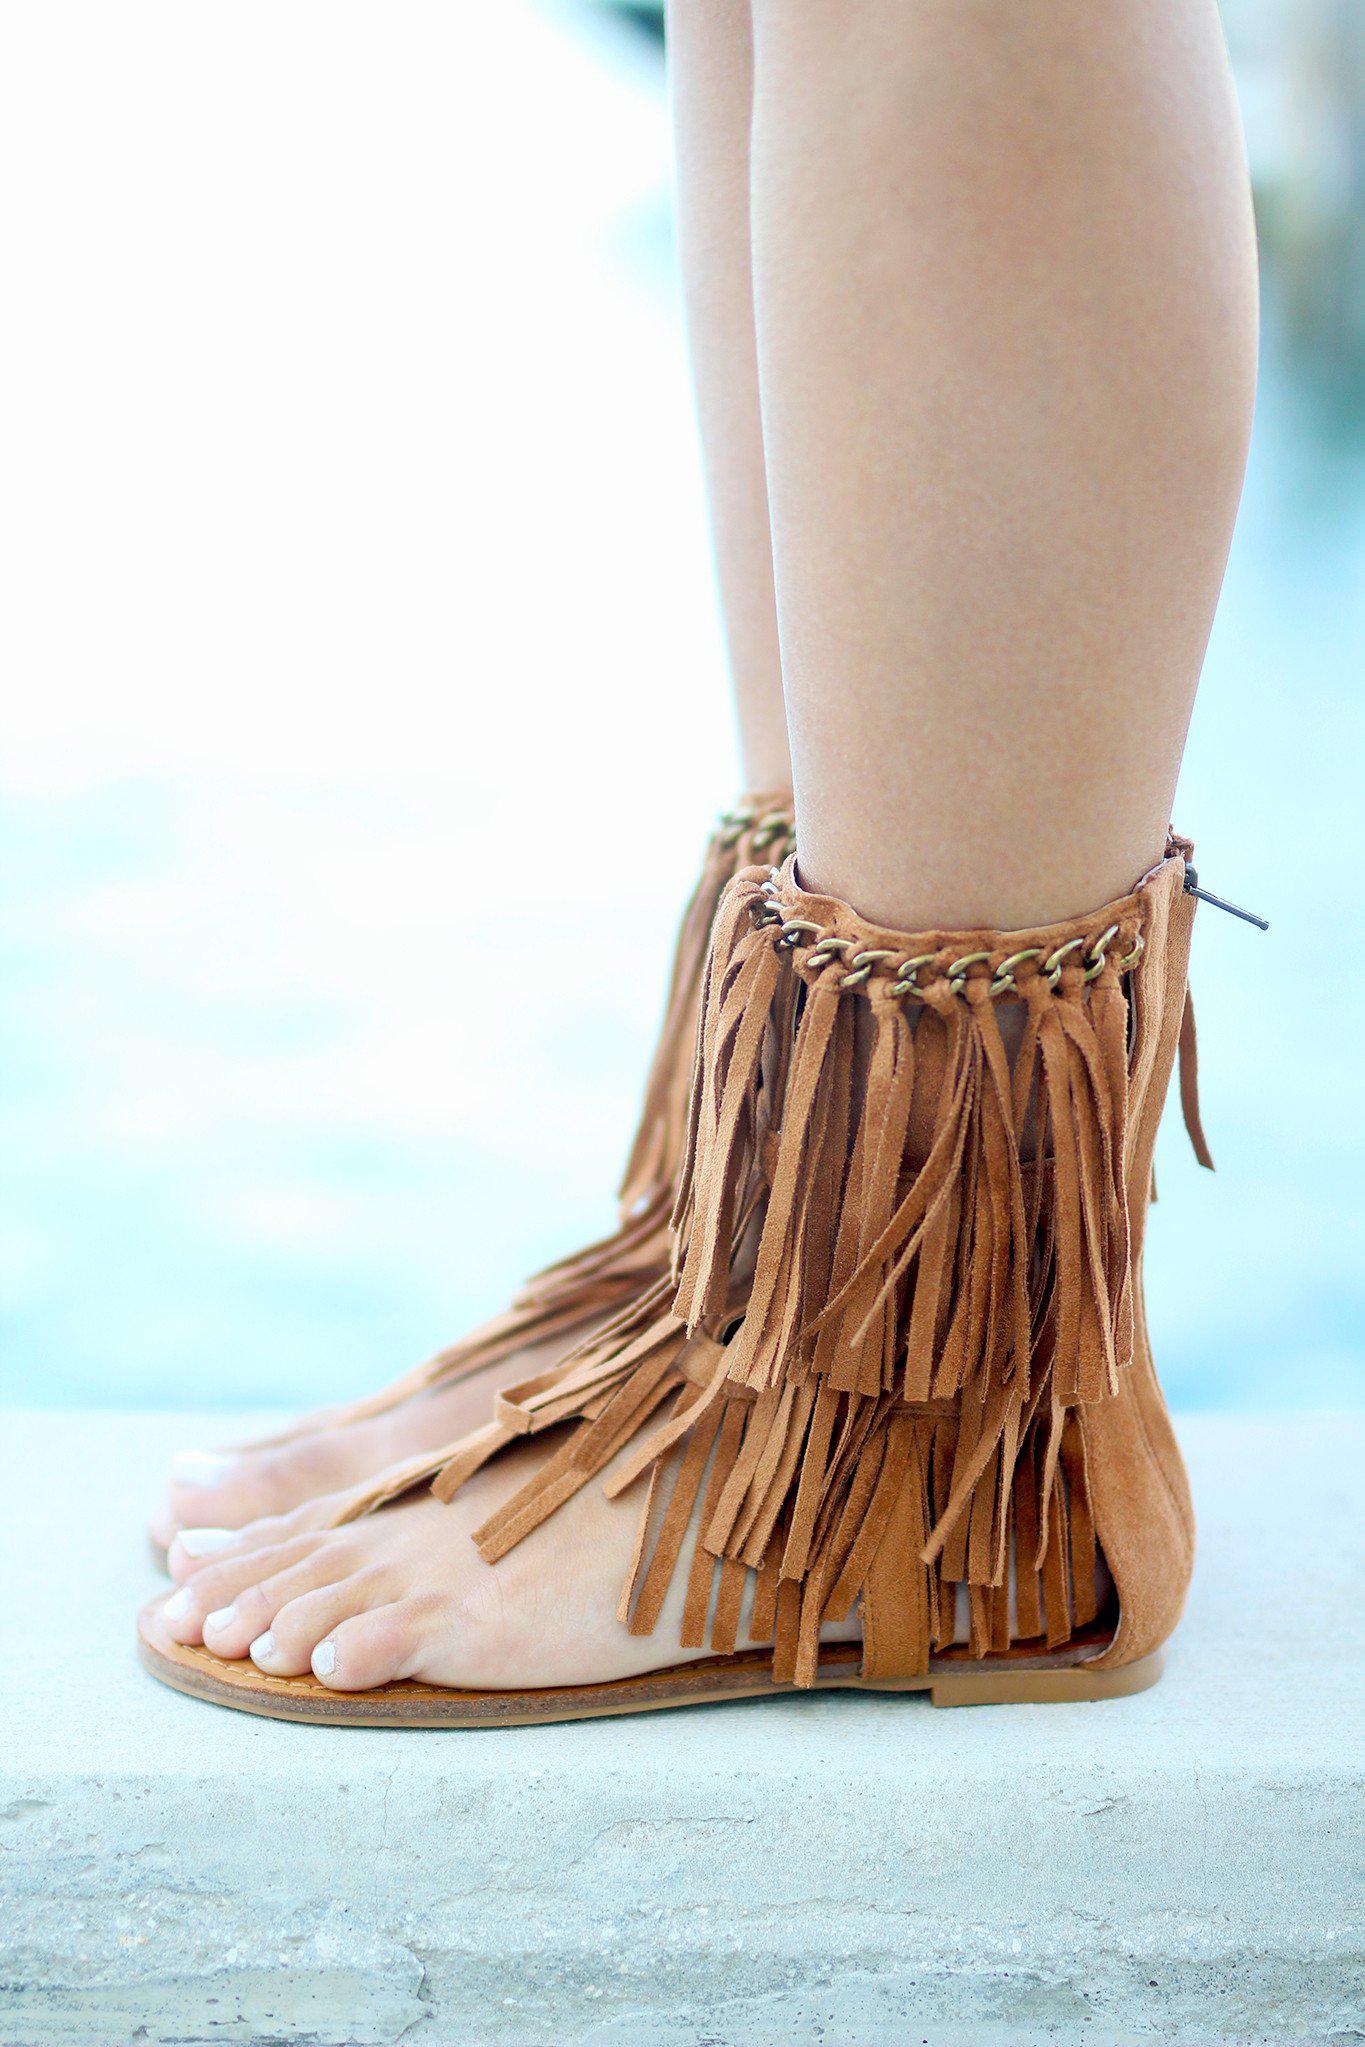 Namaste Tan Sandals